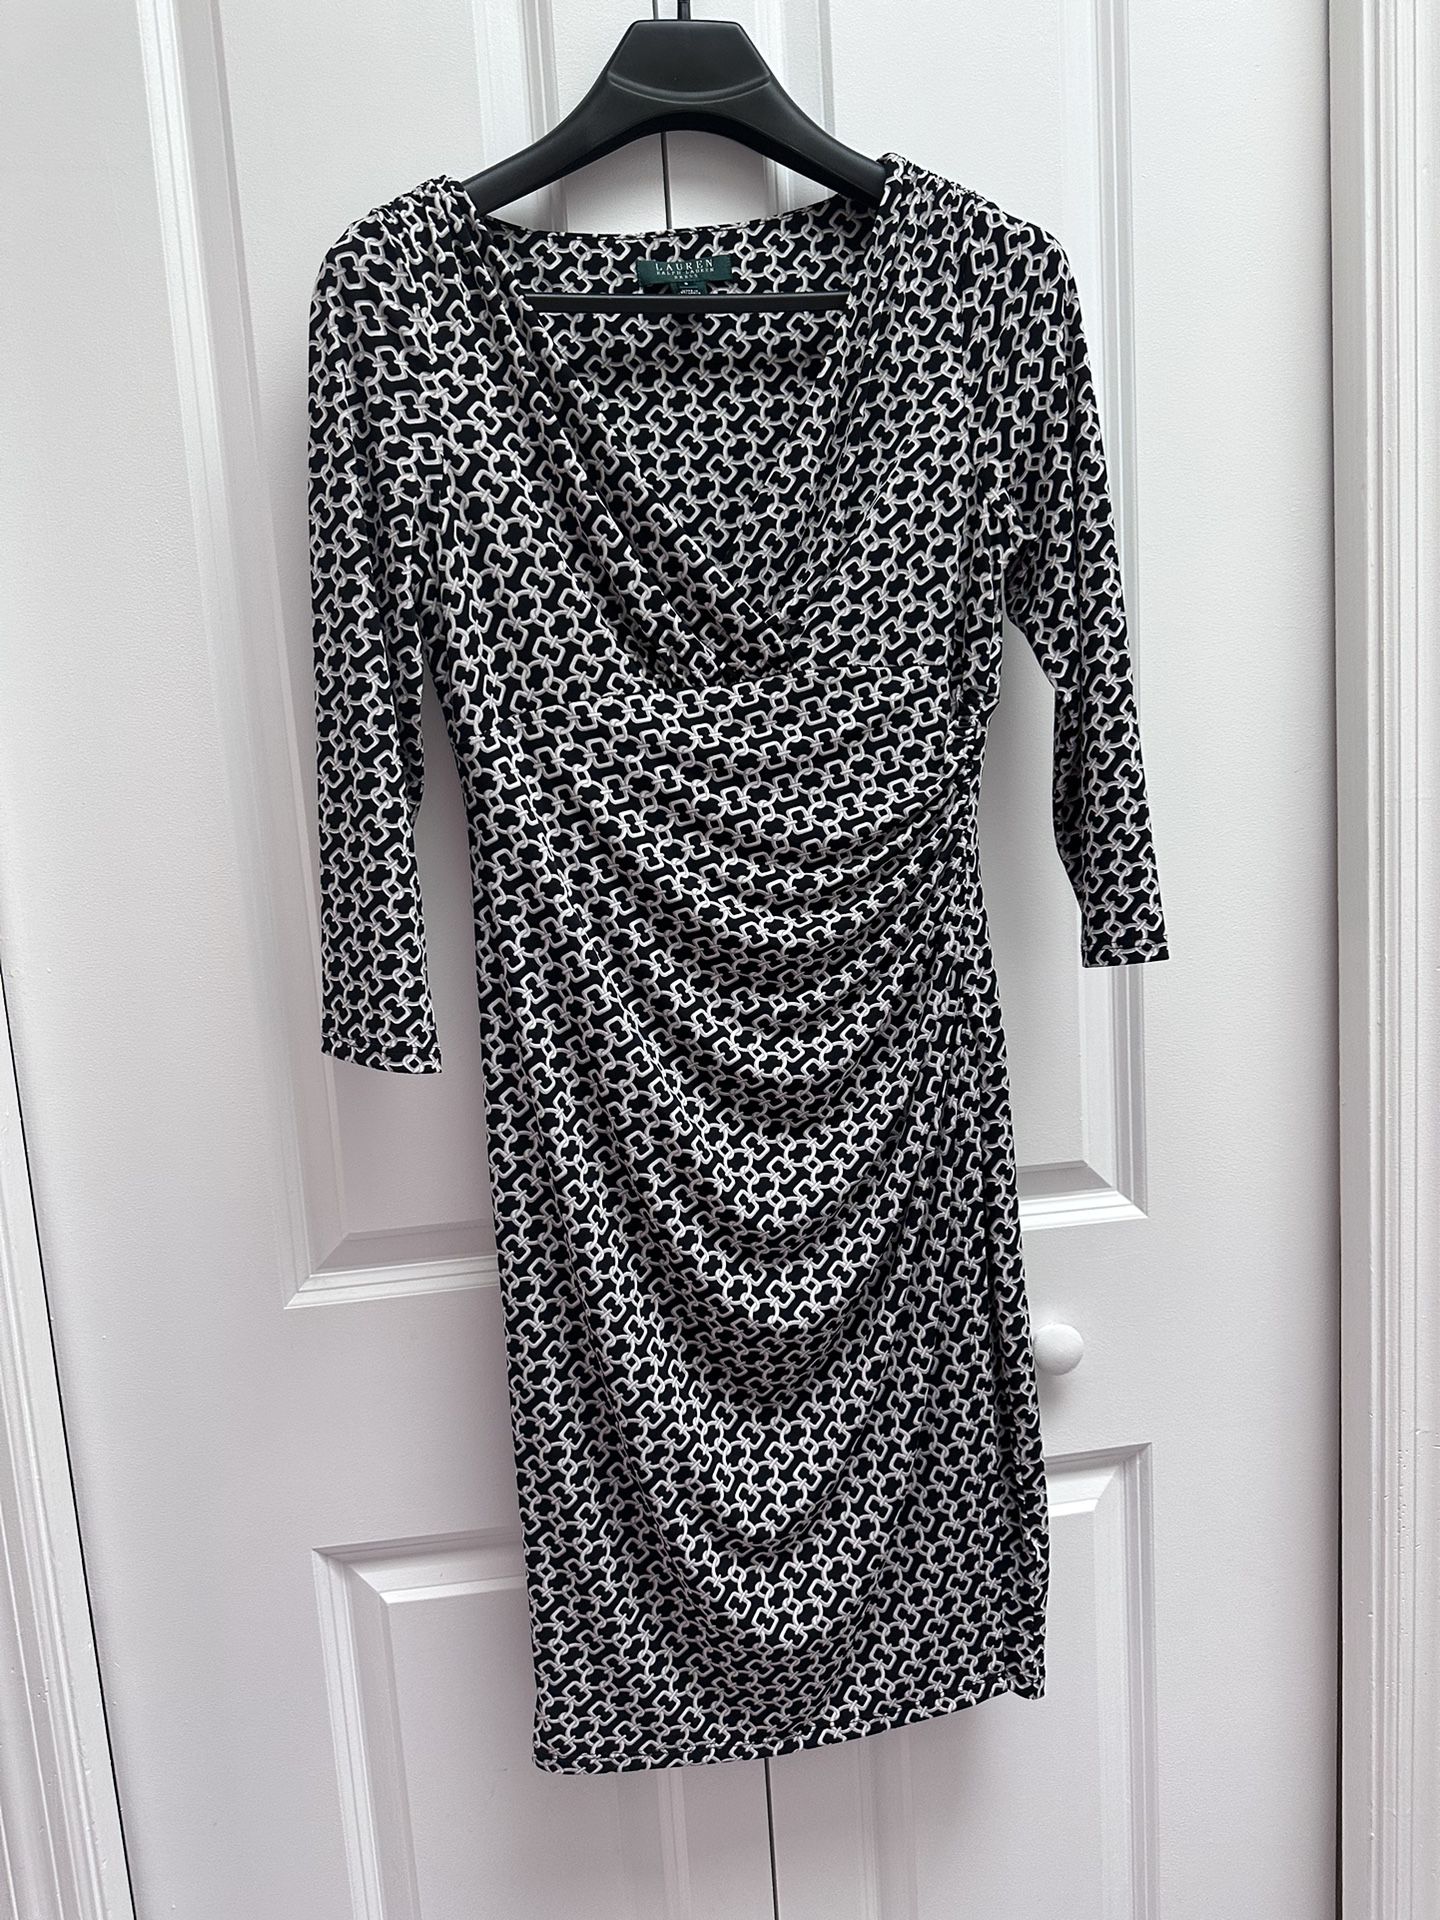 Lauren Ralph Lauren Preloved Dress , Size 8 Price:$20